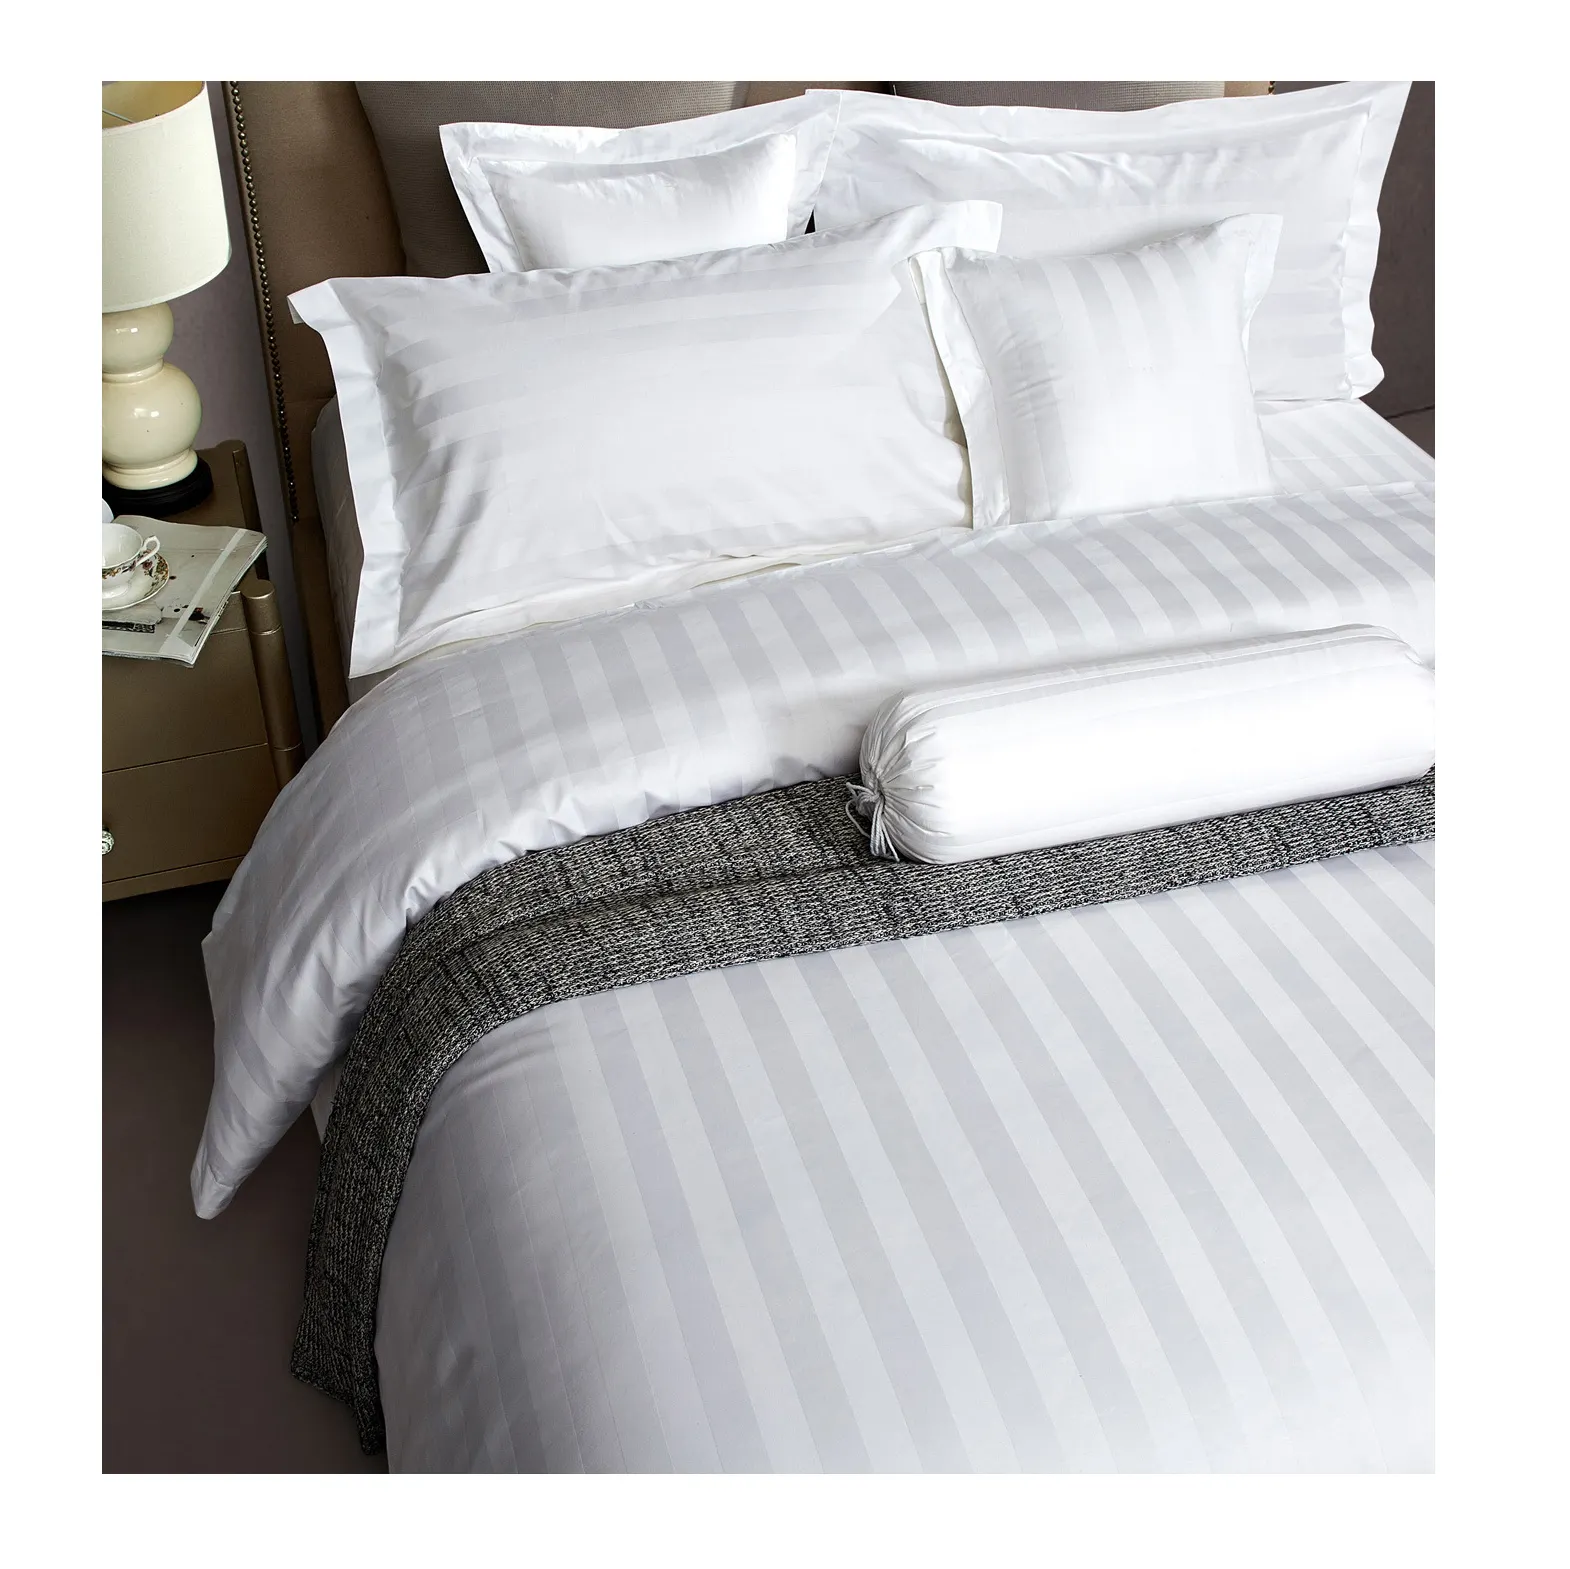 300スレッドカウントベッドカバーシートセット綿100% 卸売羽毛布団クイーンサイズ寝具セットホテルシーツベッド寝具セット